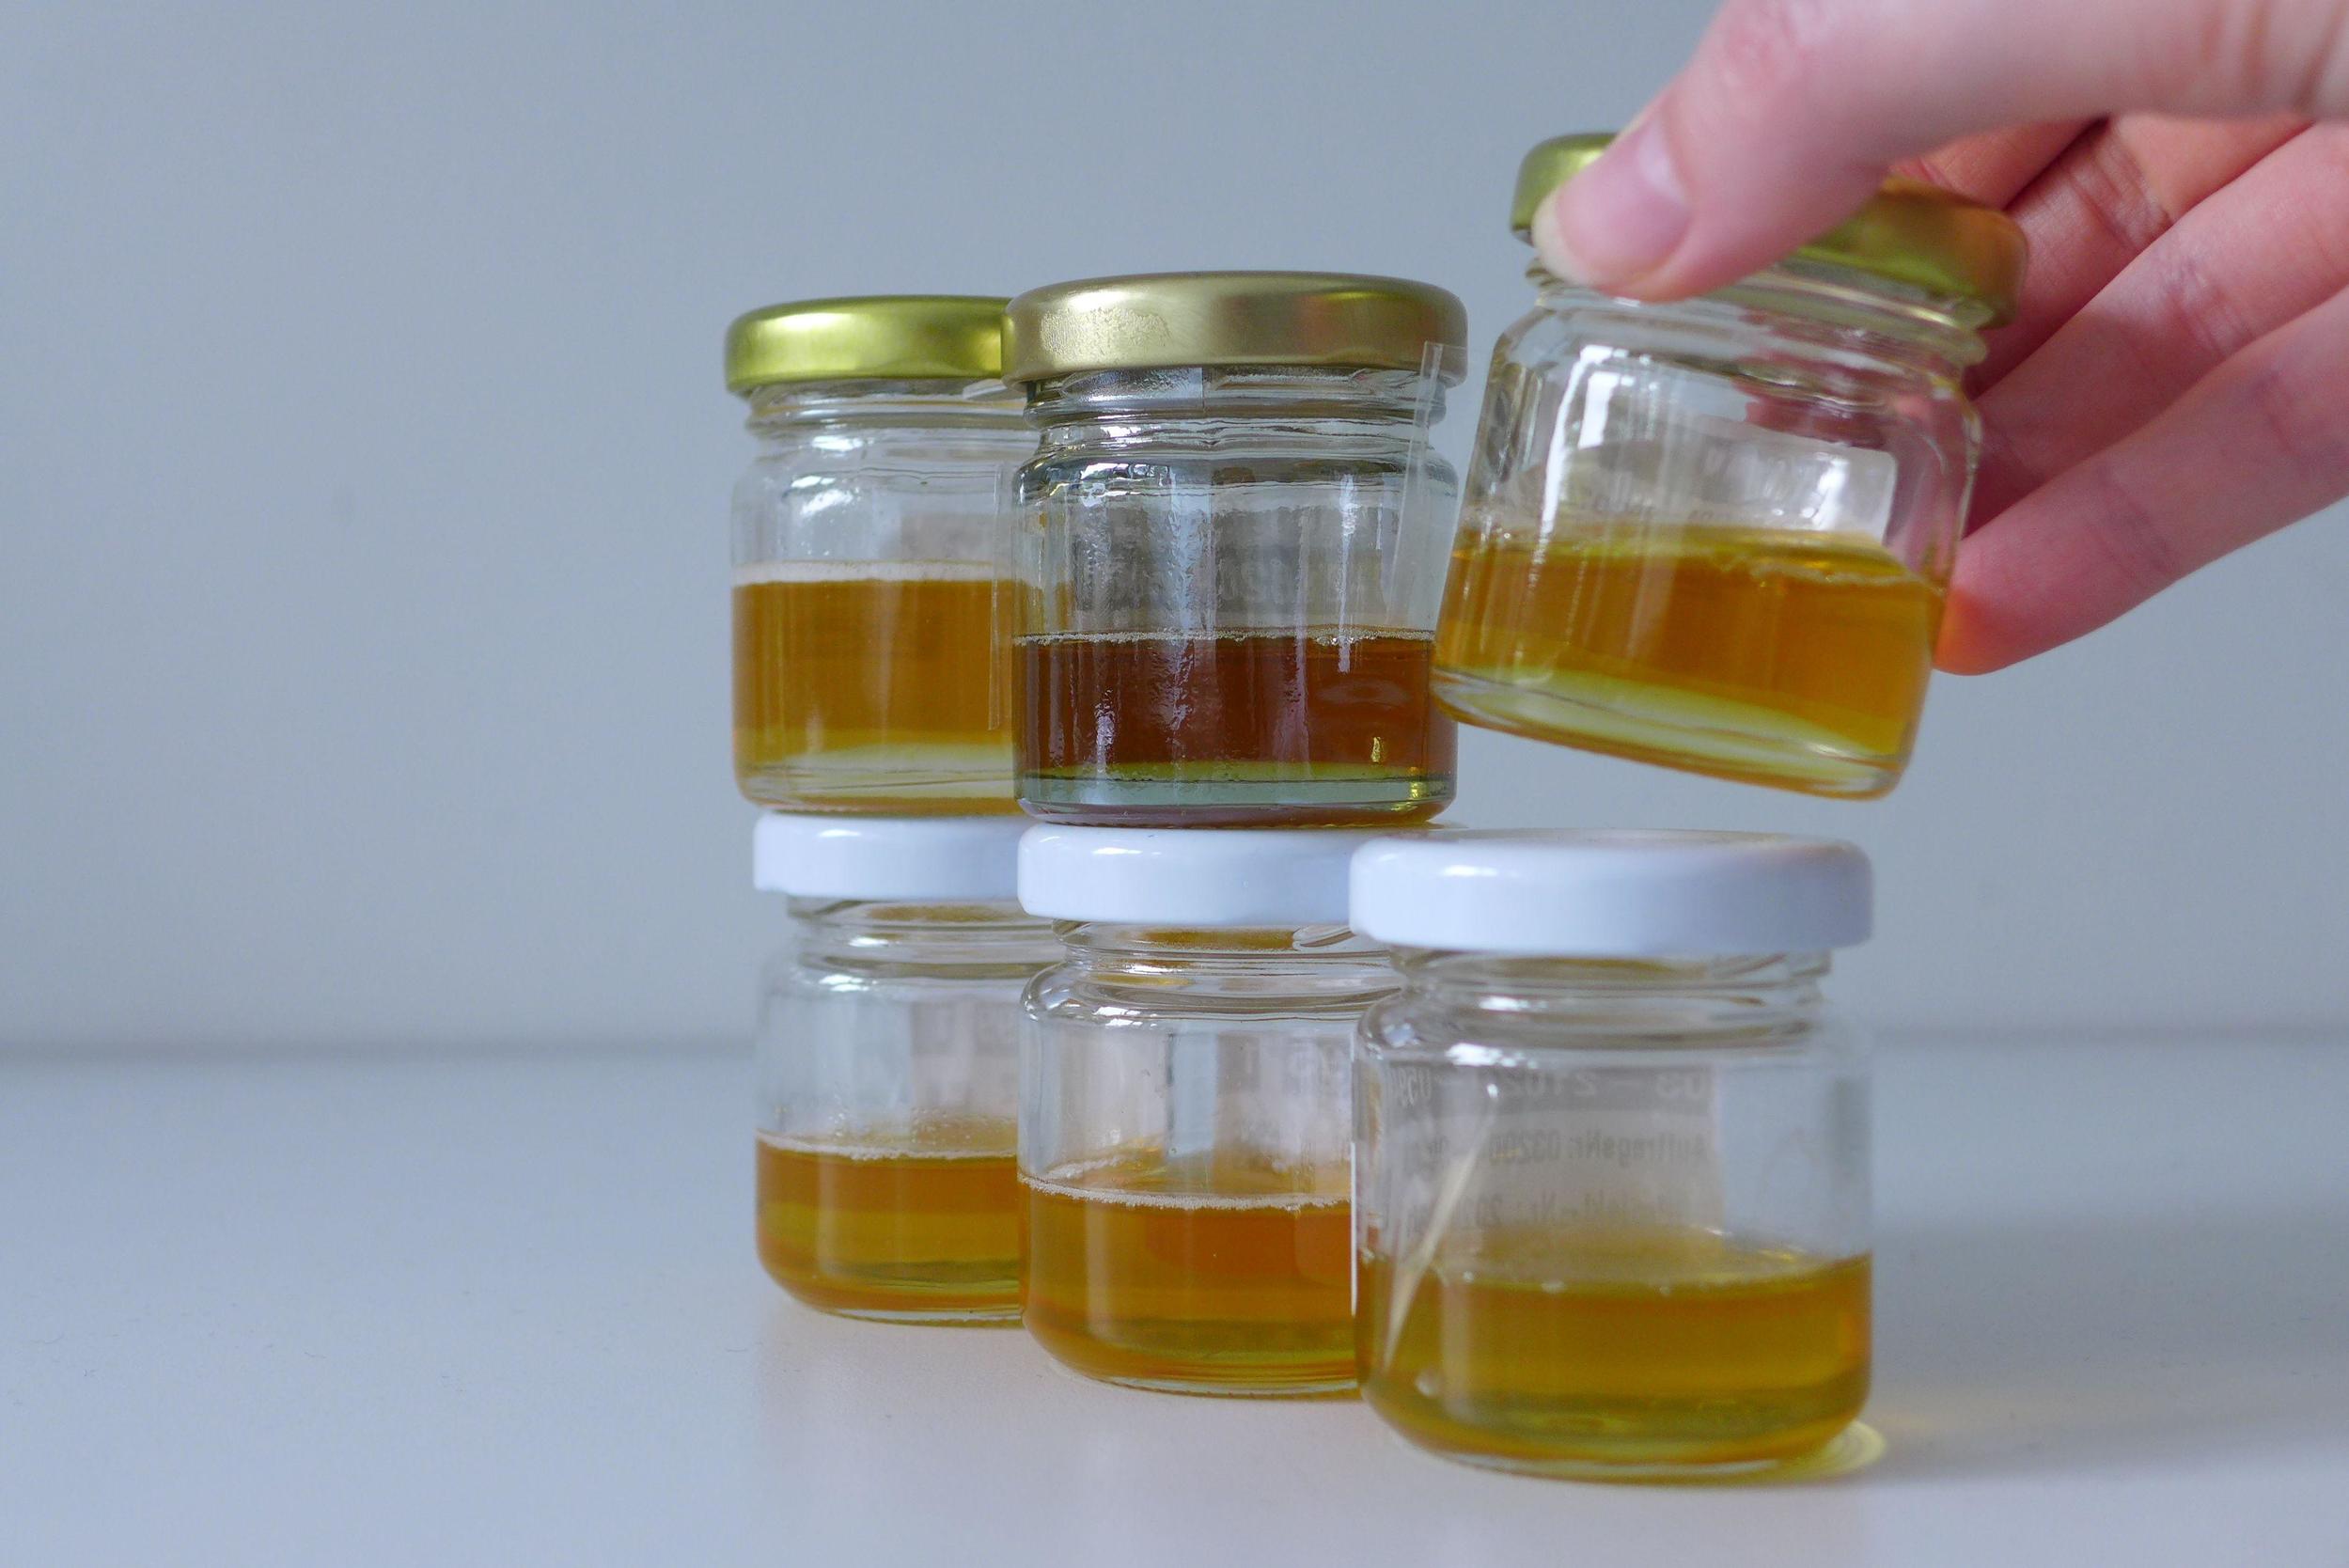 Drei kleine Honiggläser in einer Reihe, darüber eine zweite Reihe mit drei Gläsern. Eine Hand hebt das Glas oben rechts leicht an.